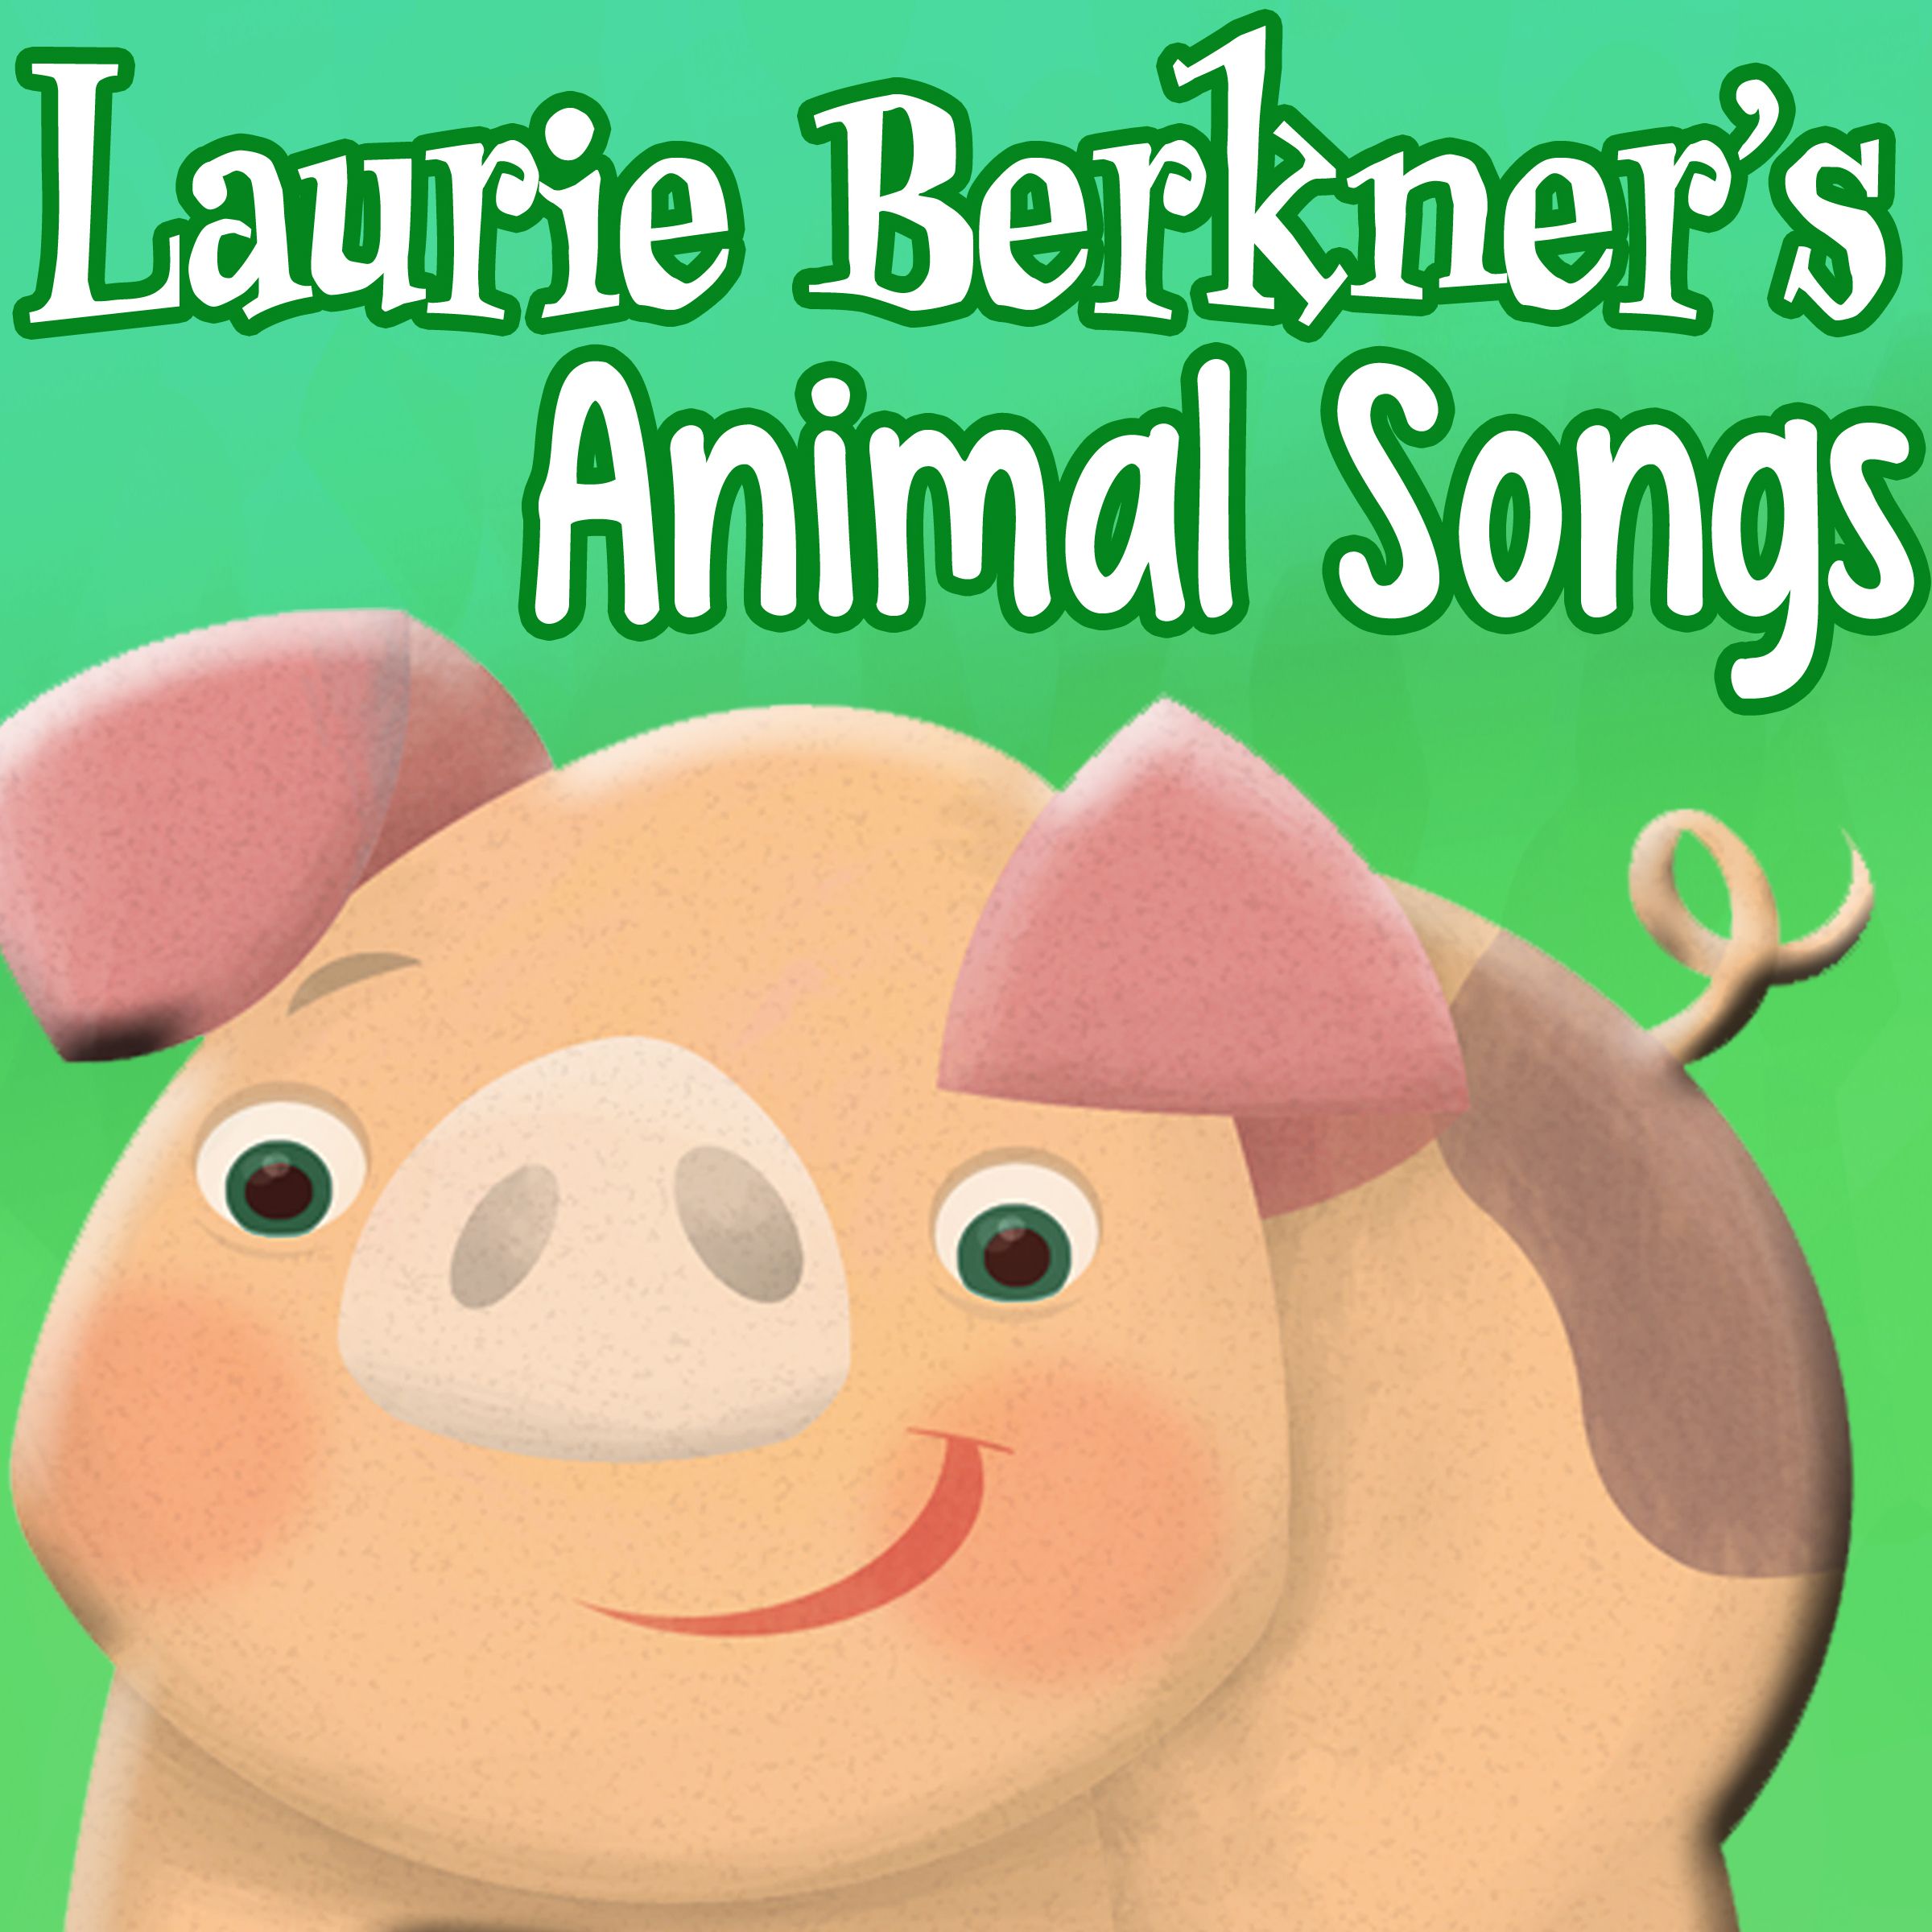 Laurie Berkner's Animal Songs | The Laurie Berkner Band